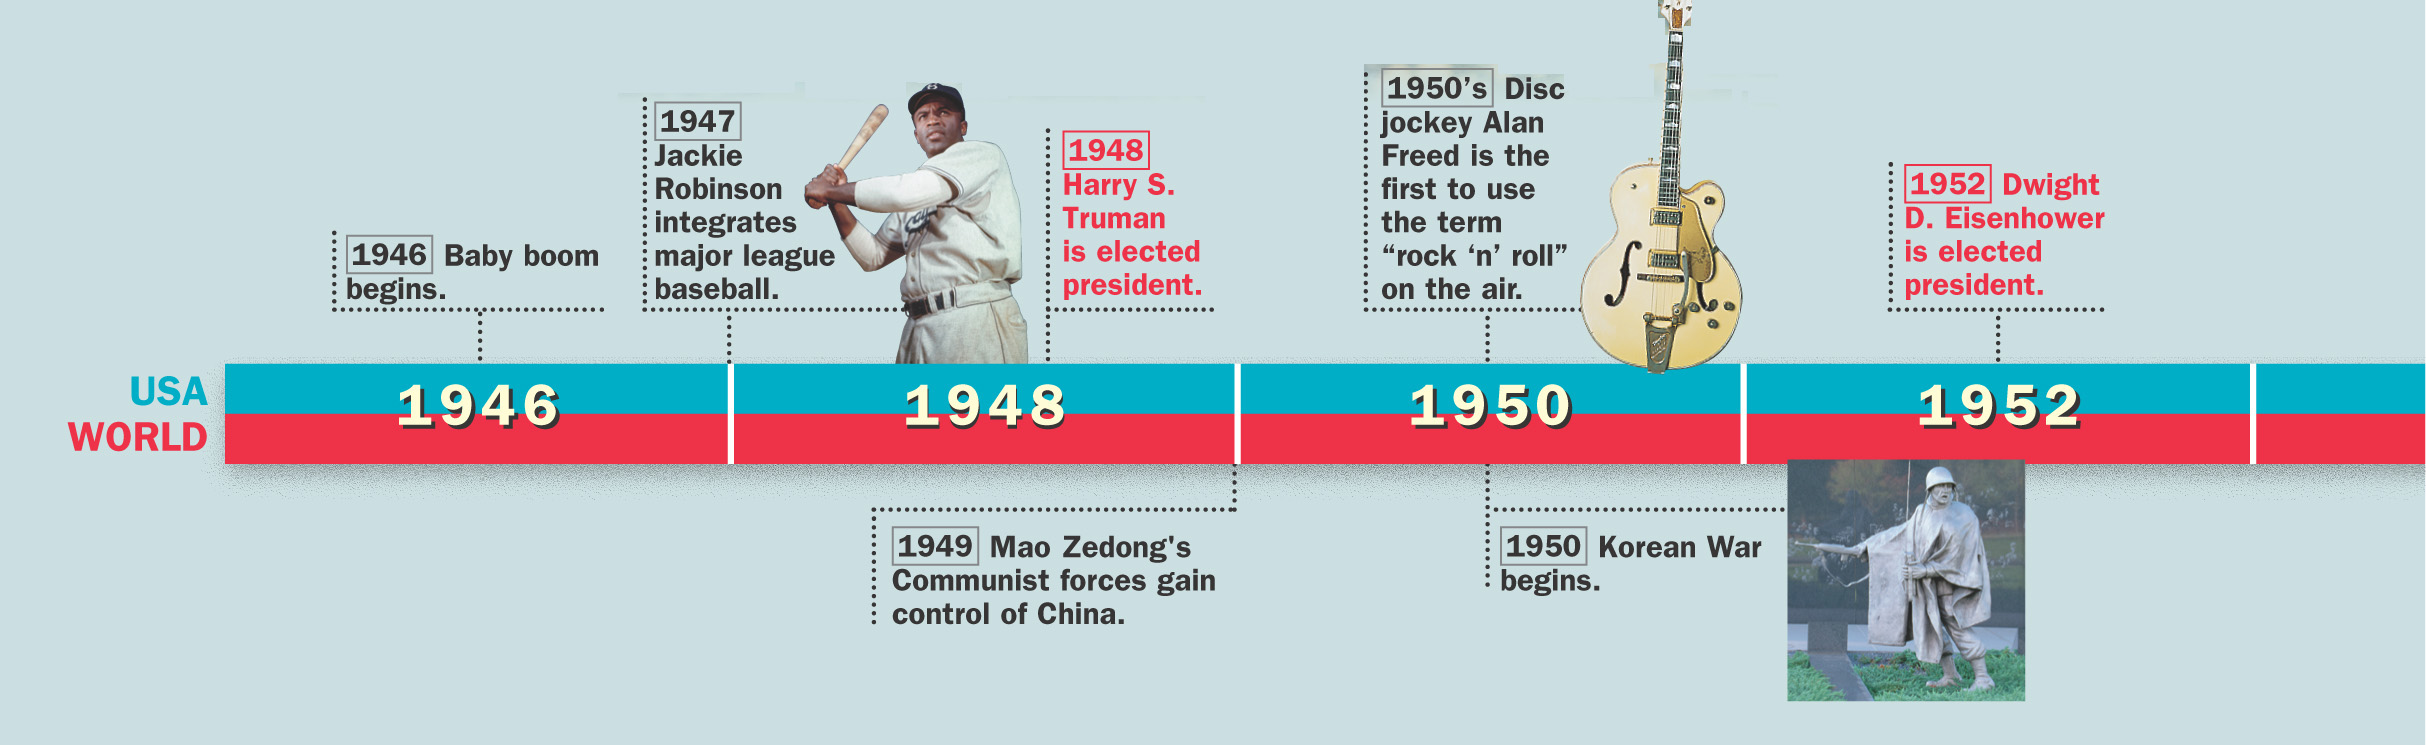 Timeline: 1946 - 1952 